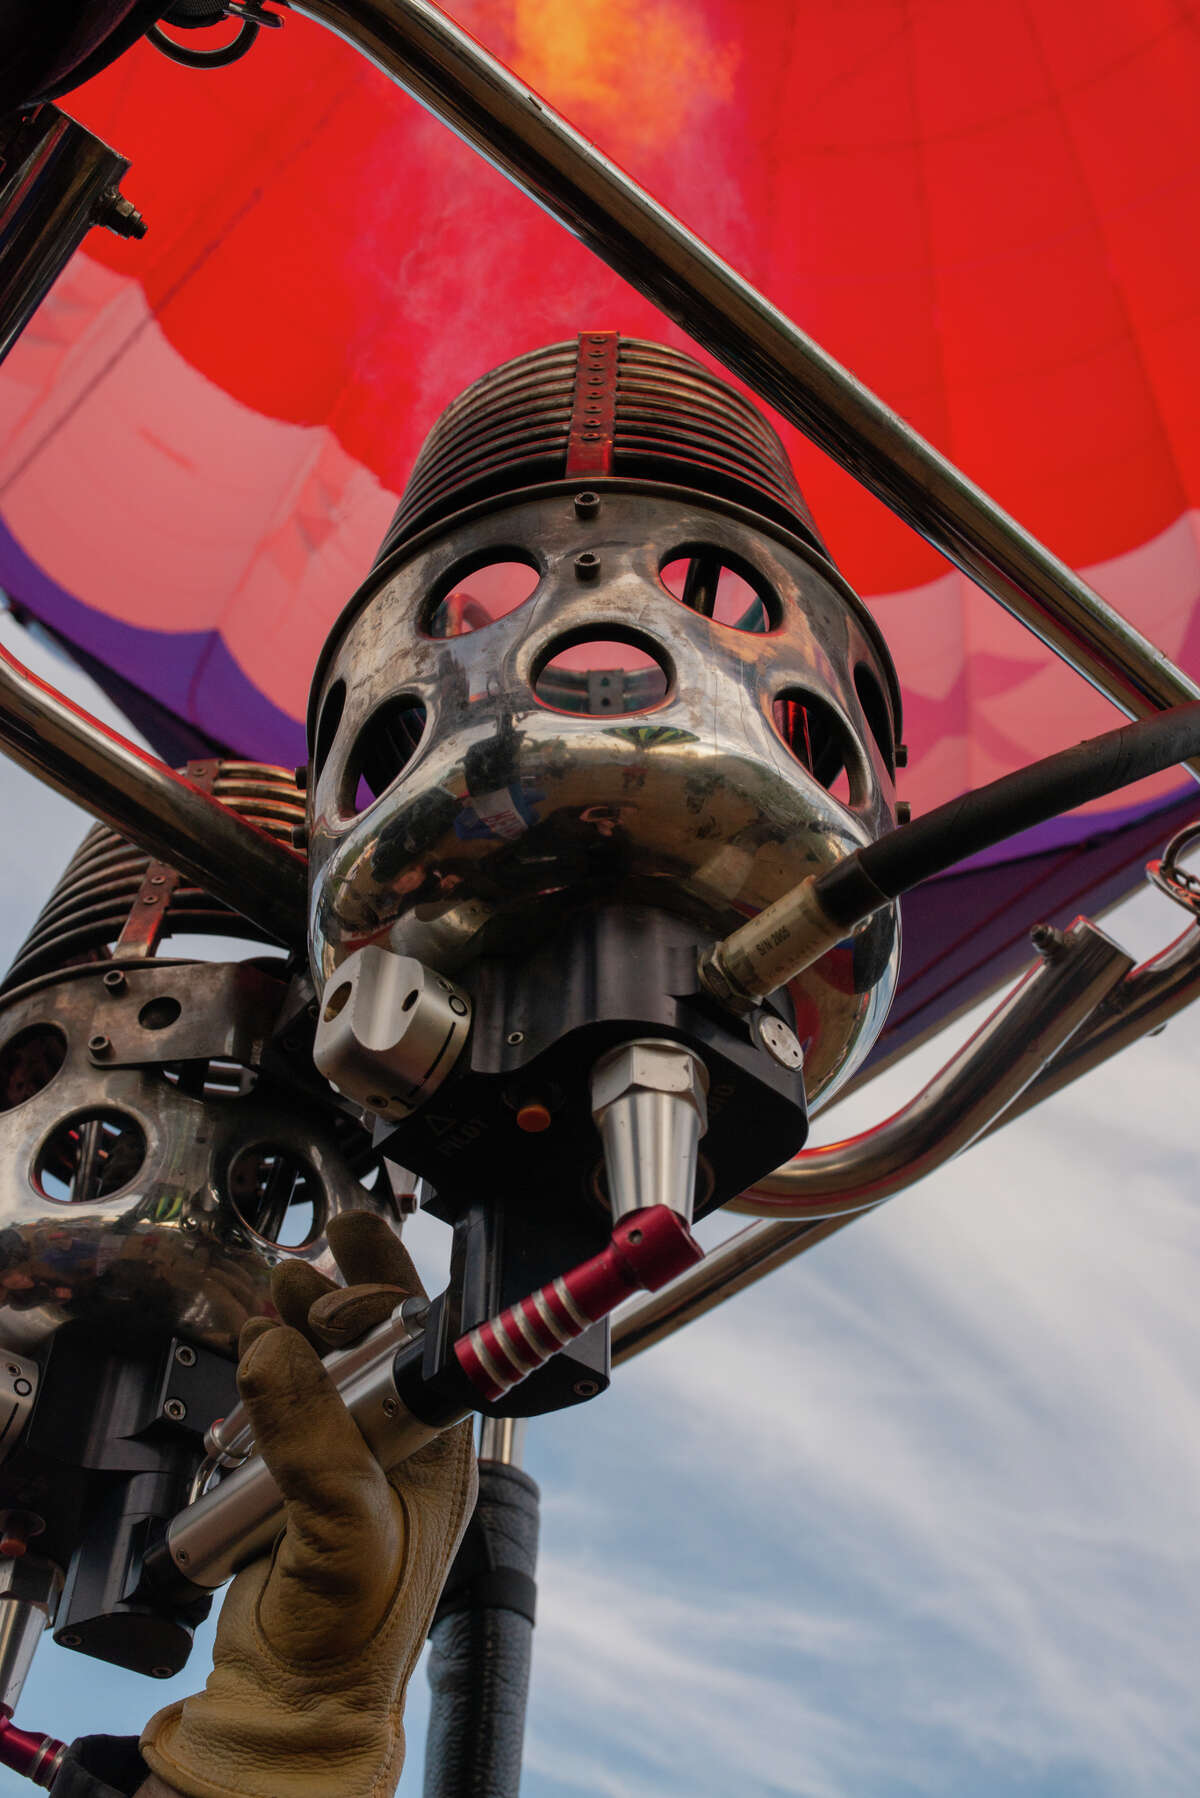 Photos The Hudson Valley Hot Air Balloon Festival